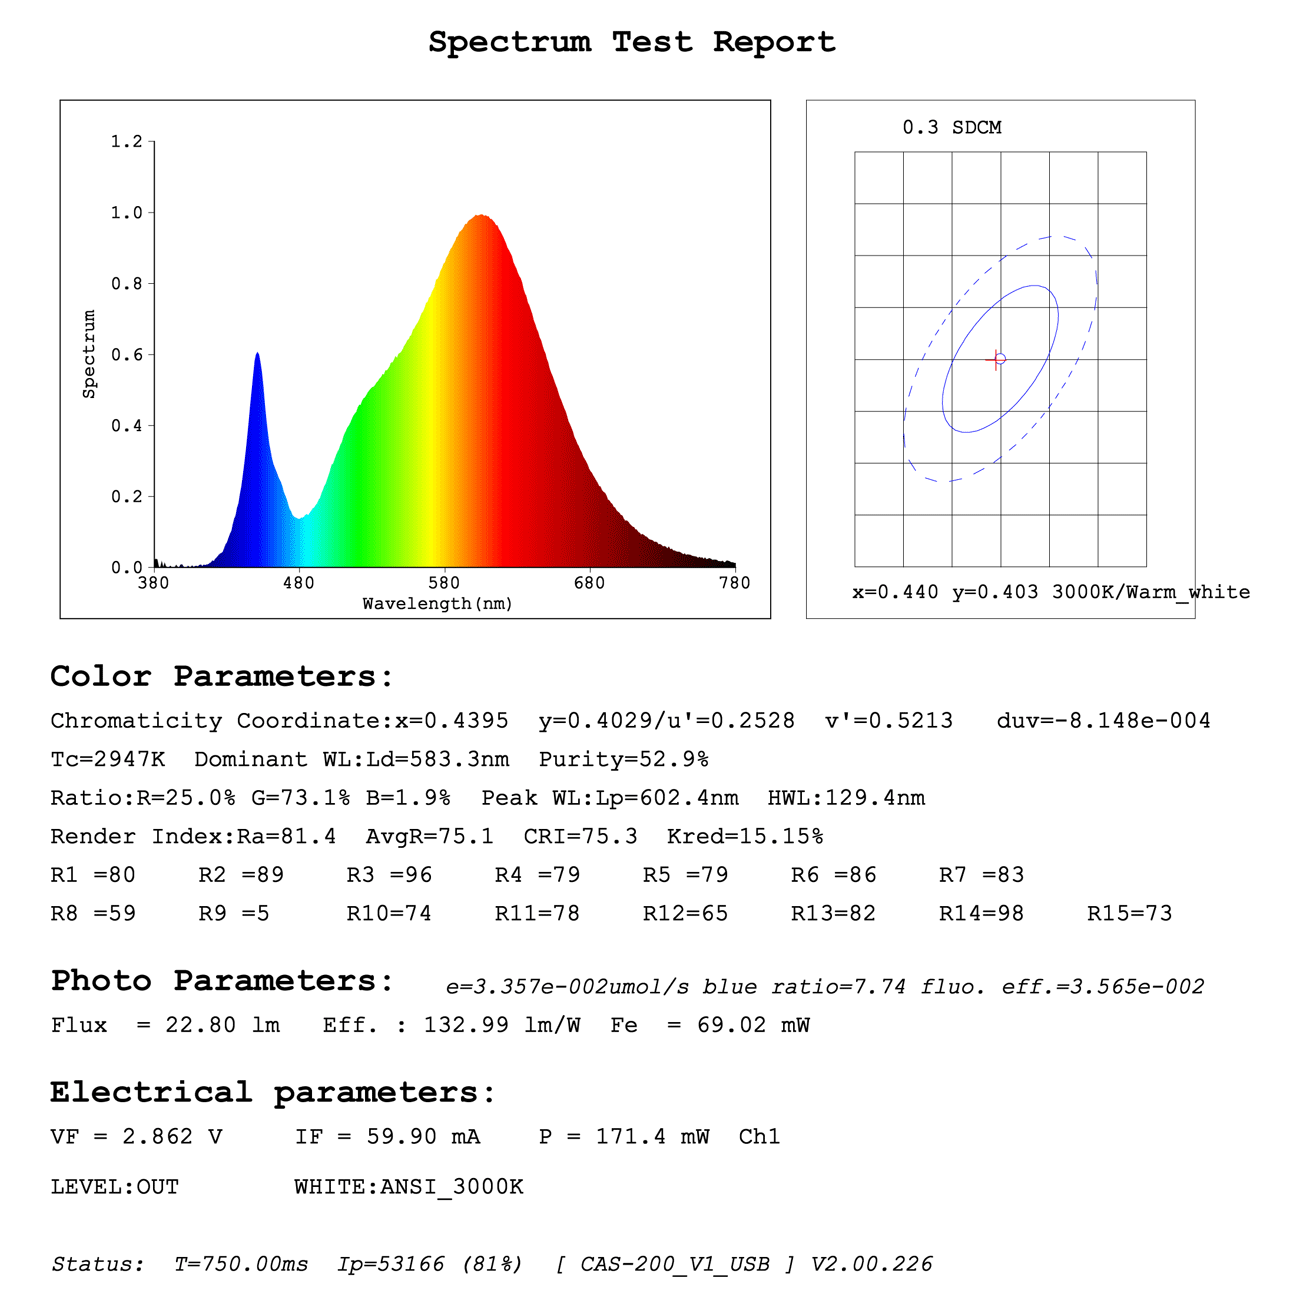 5050 3000K светодиодные ленты отчет об испытаниях спектра светодиодов - цветовая терпимость светодиодных лент